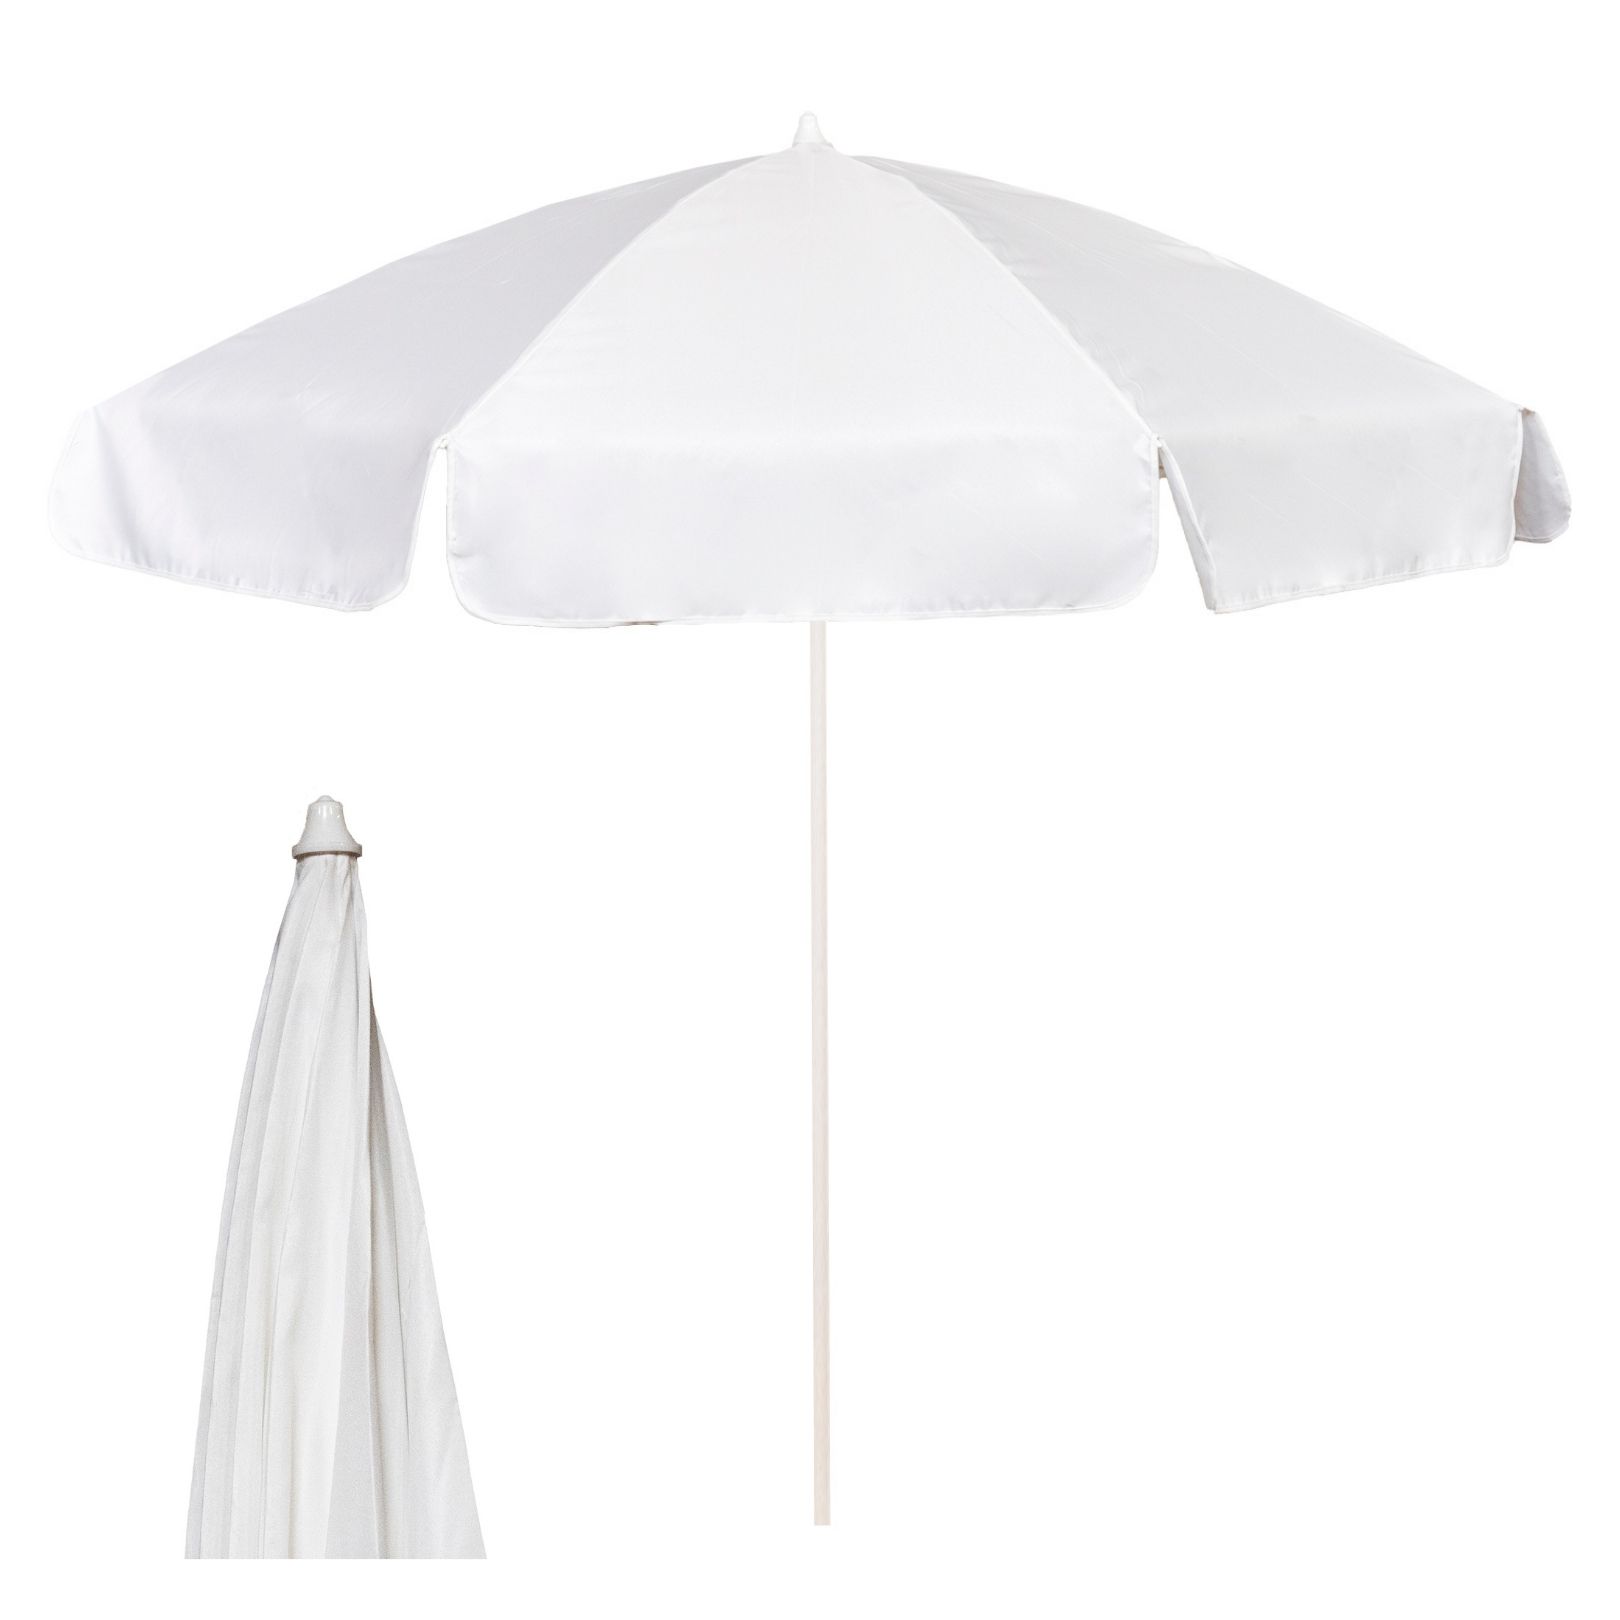 vrek Quagga spontaan Garden Umbrellas/Pub Parasols - 2m Diameter - Wholesale Trade Prices